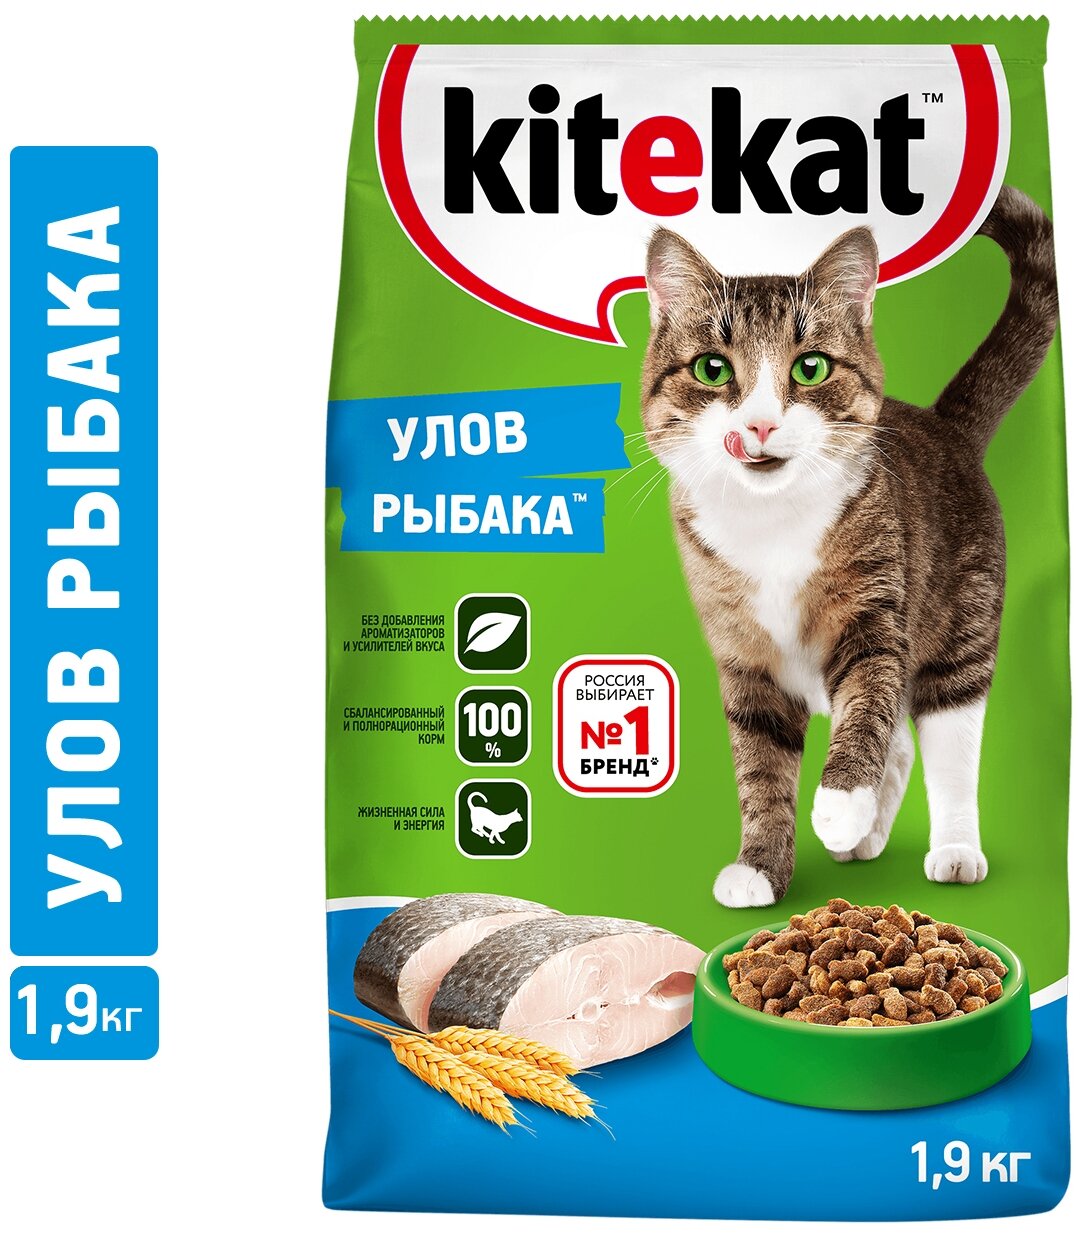 Сухой корм для кошек Kitekat улов рыбака, 1.9кг - фотография № 1